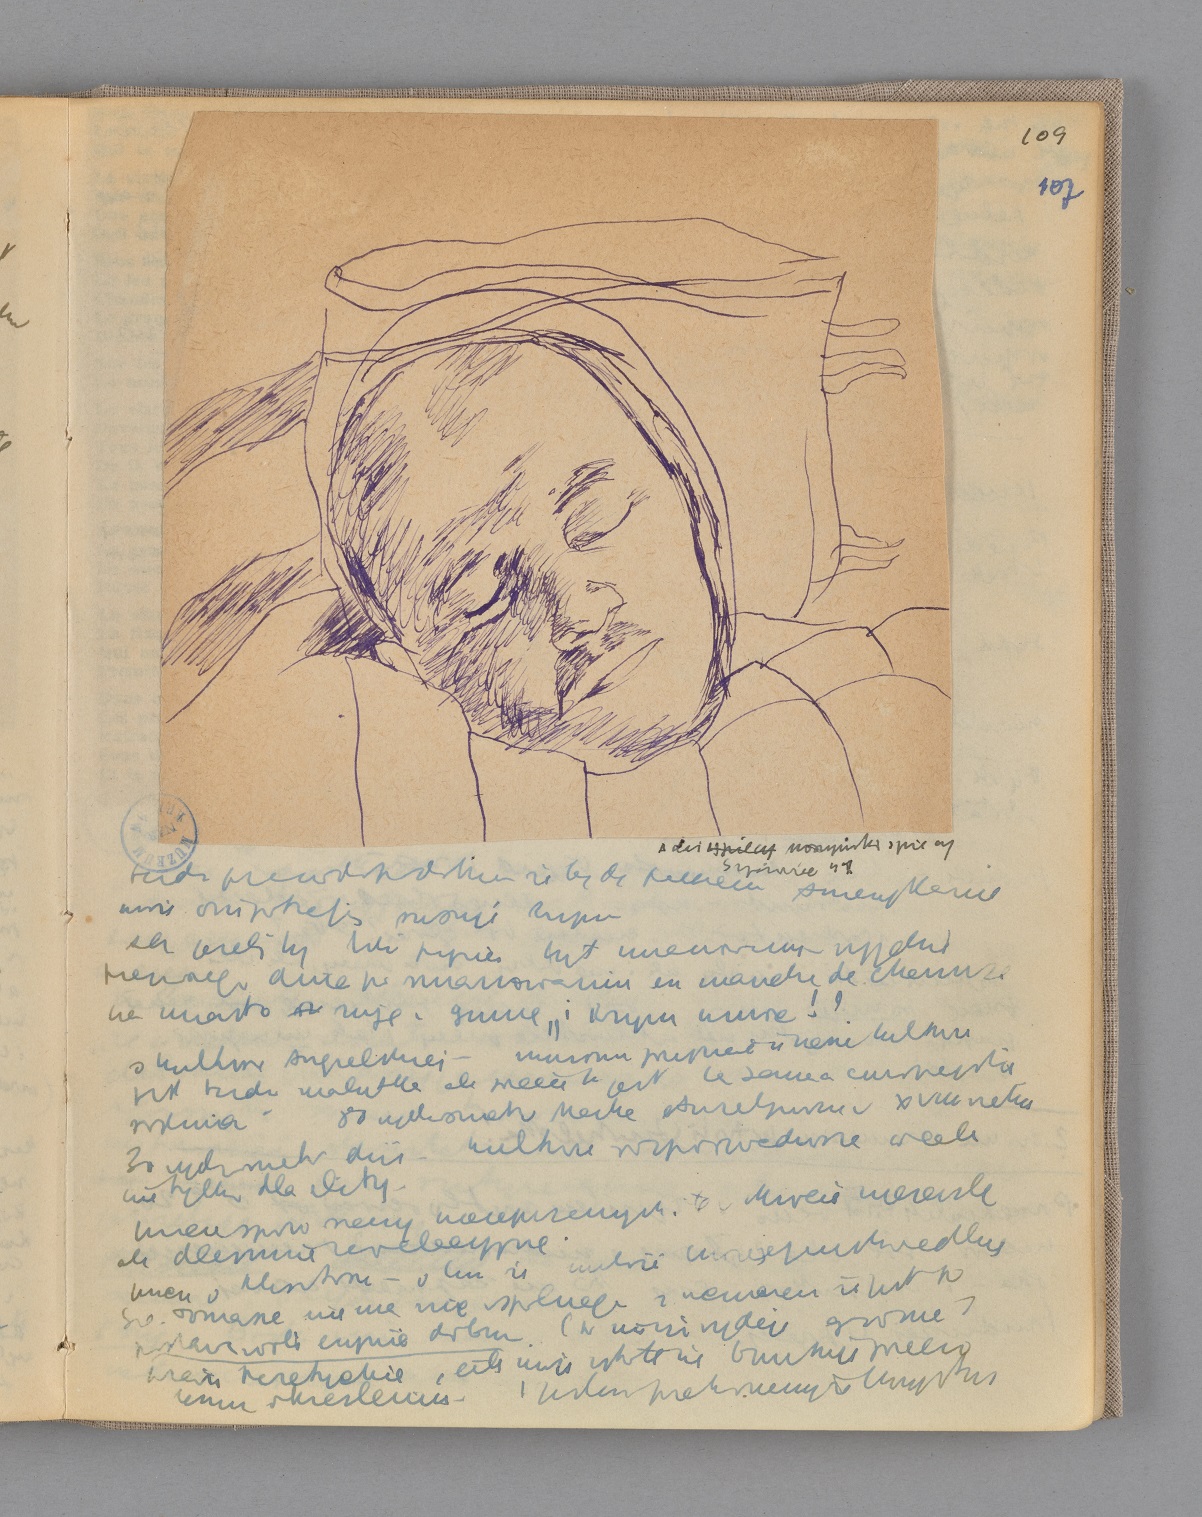 Zdjęcie strony dziennika Józefa Czapskiego - rysunek ołówkiem przedstawiający twarz śpiącego mężczyzny.